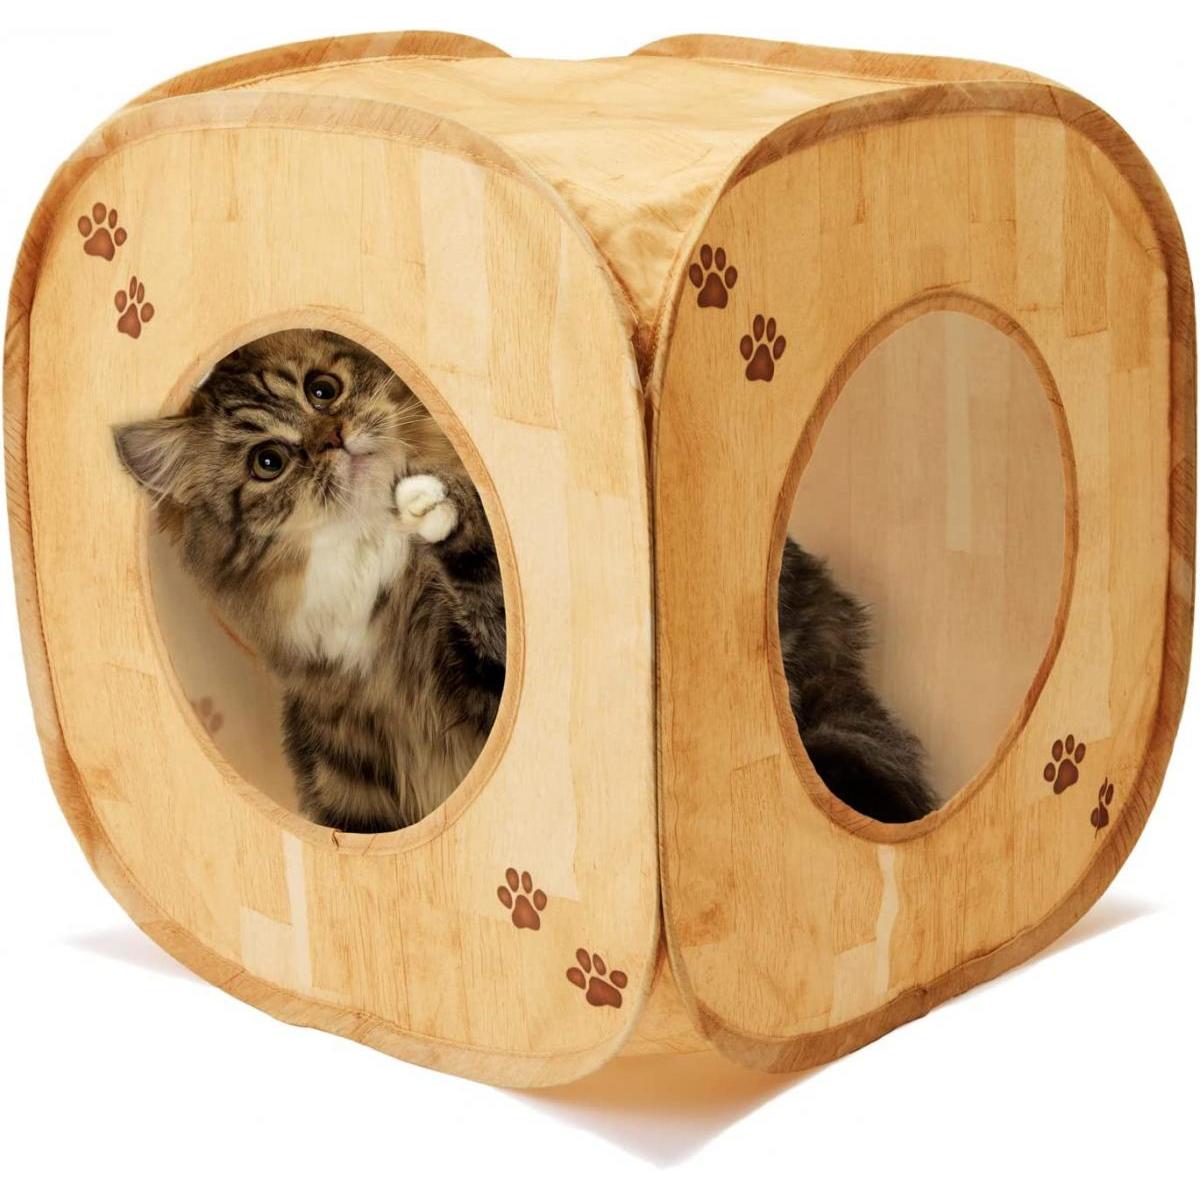 猫壱 necoichi キャットプレイキューブ 木目柄 猫 おもちゃ くつろぎハウス 肉球模様 かわいい たためる コンパクト ねこ ネコ